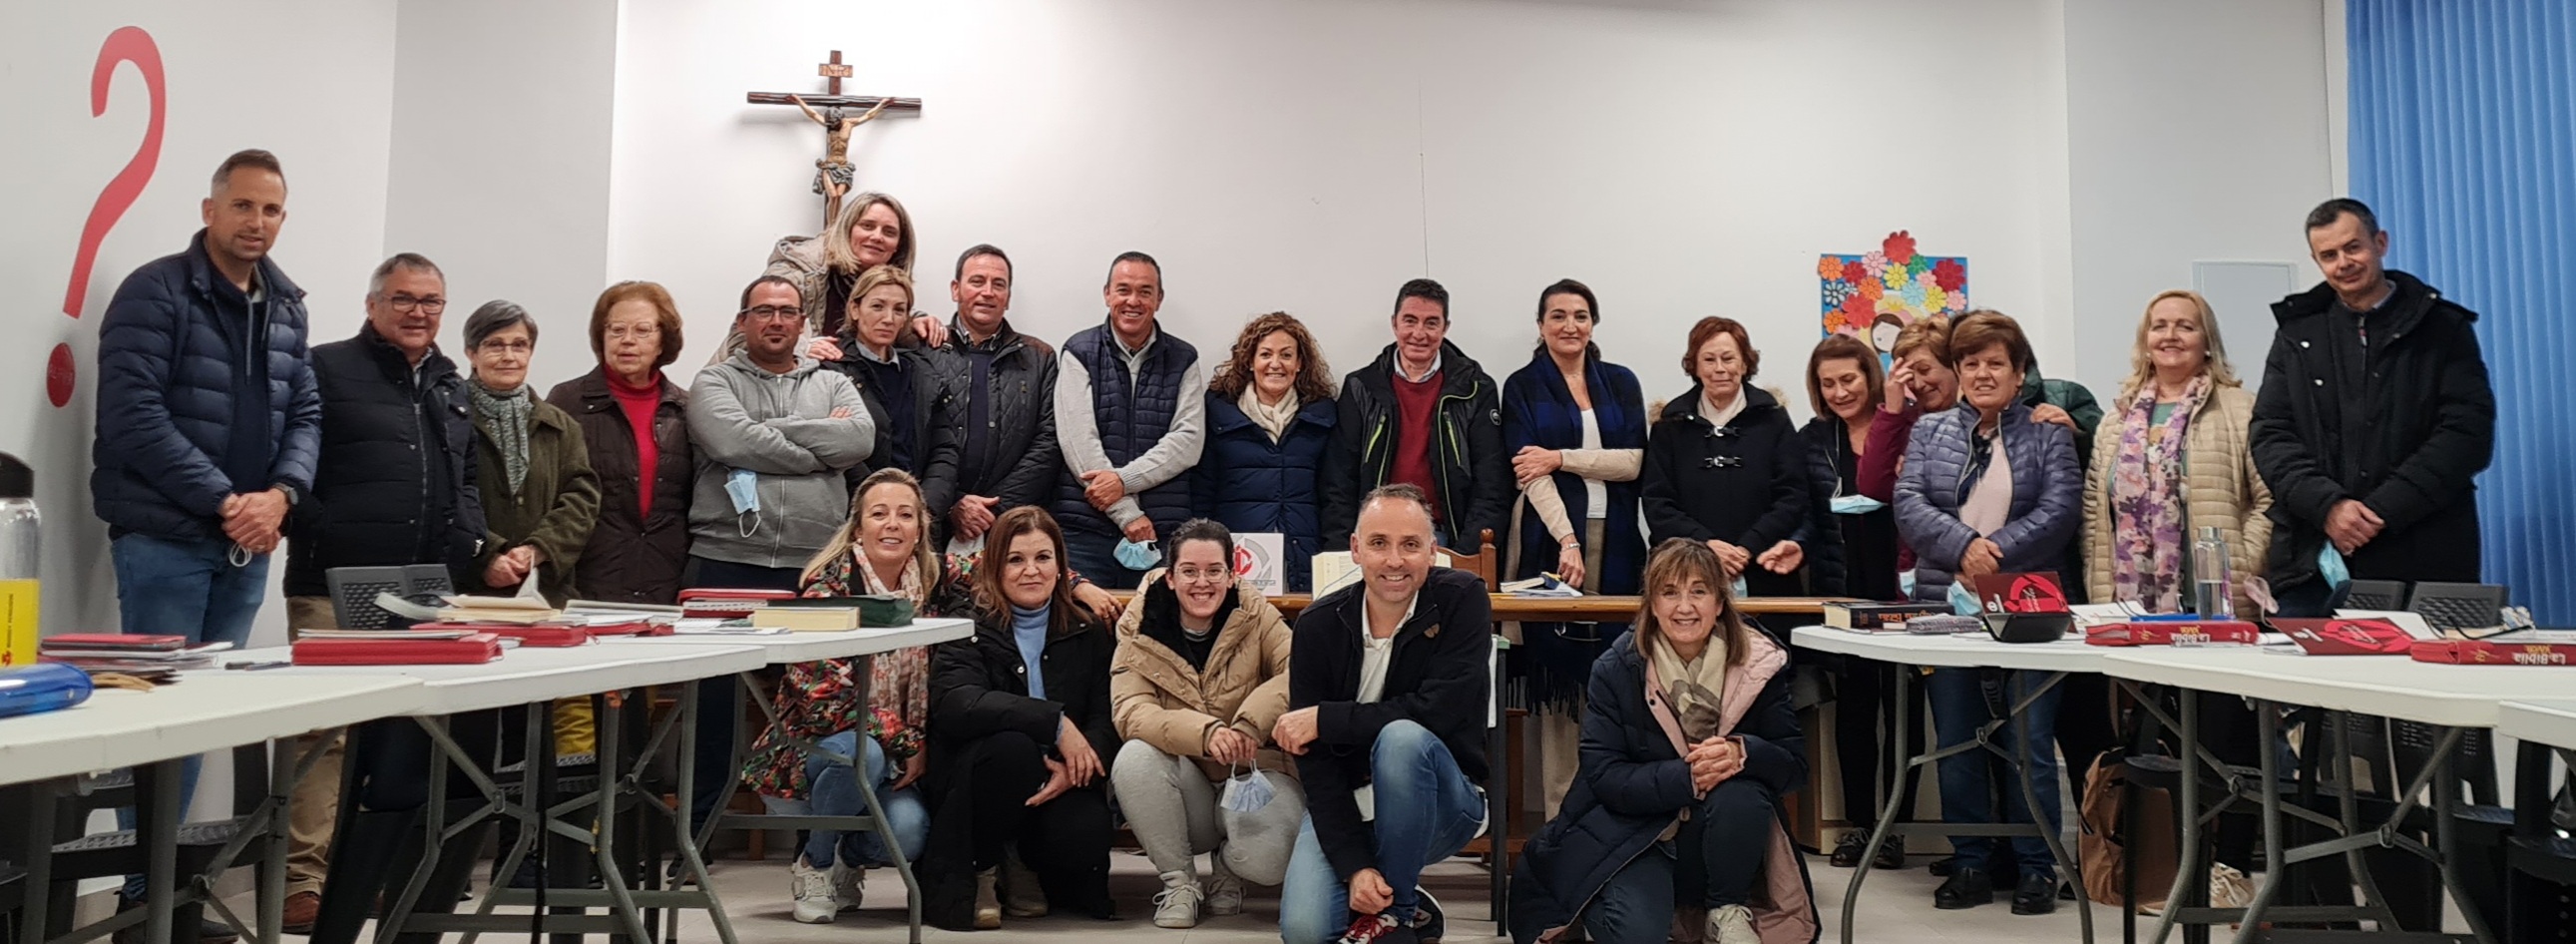 Testimonio: “Aprender a orar para aprender a vivir” taller de Oración y Vida  en Villargordo Jaén – Diócesis de Jaén